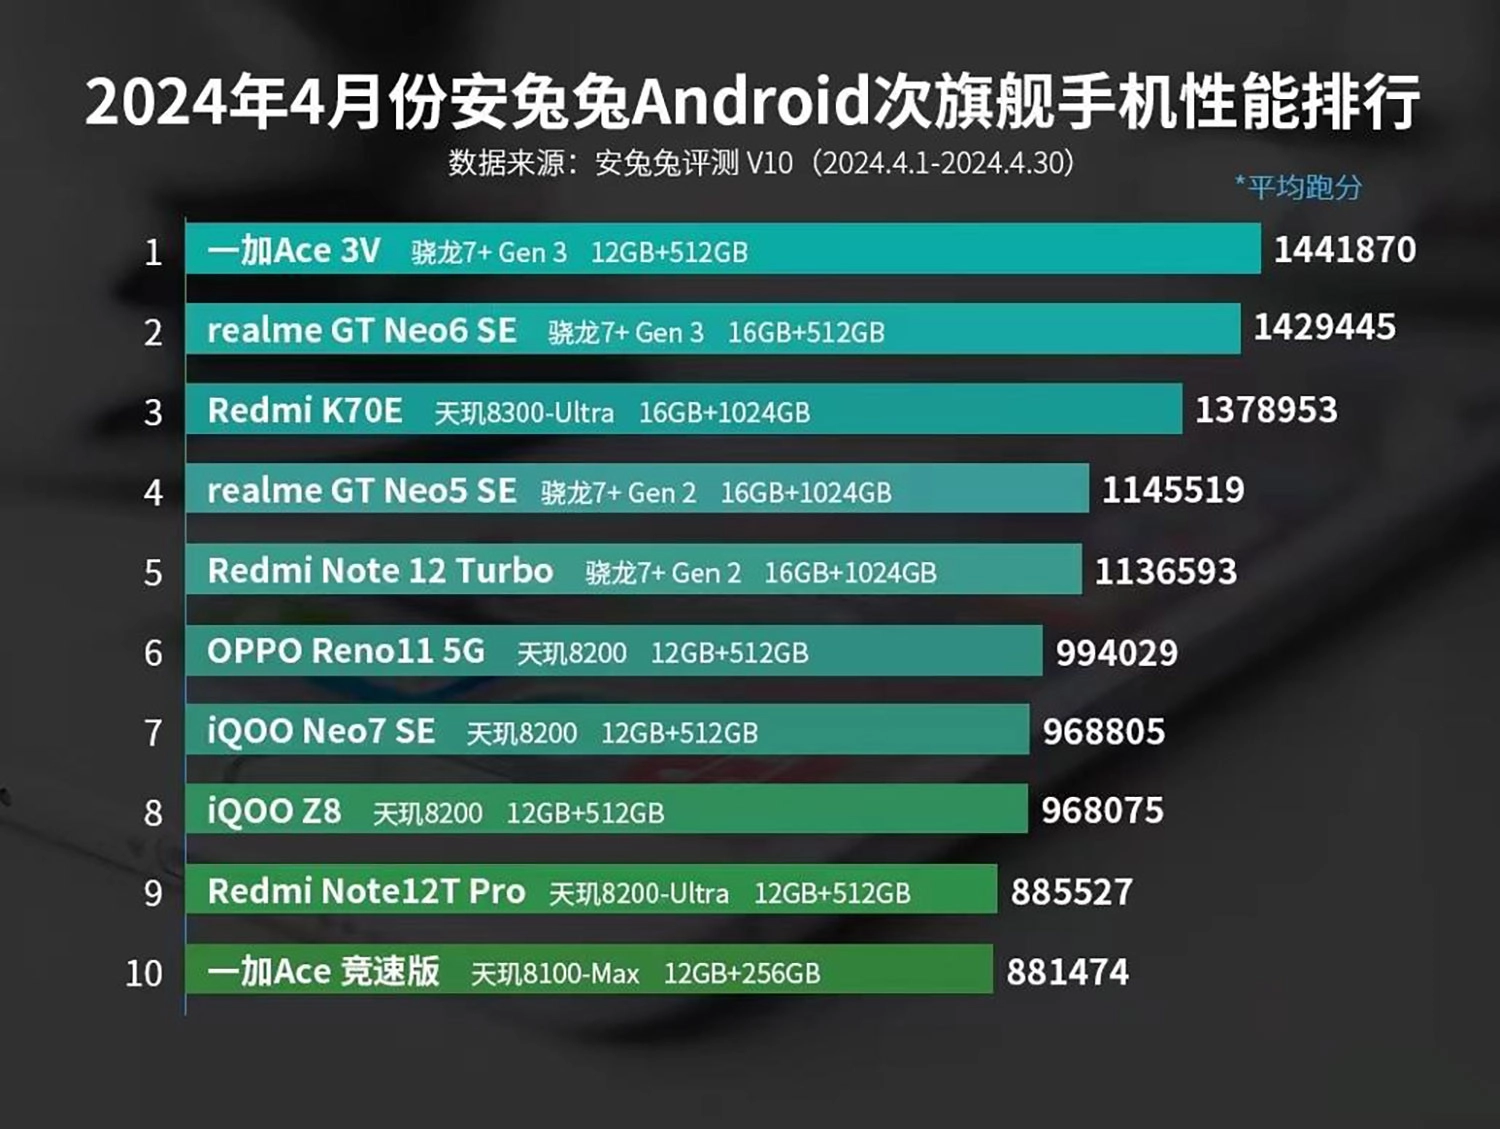 Bảng xếp hạng AnTuTu tháng 5 2024: Top 10 smartphone tầm trung có AnTuTu mạnh nhất 5/2024